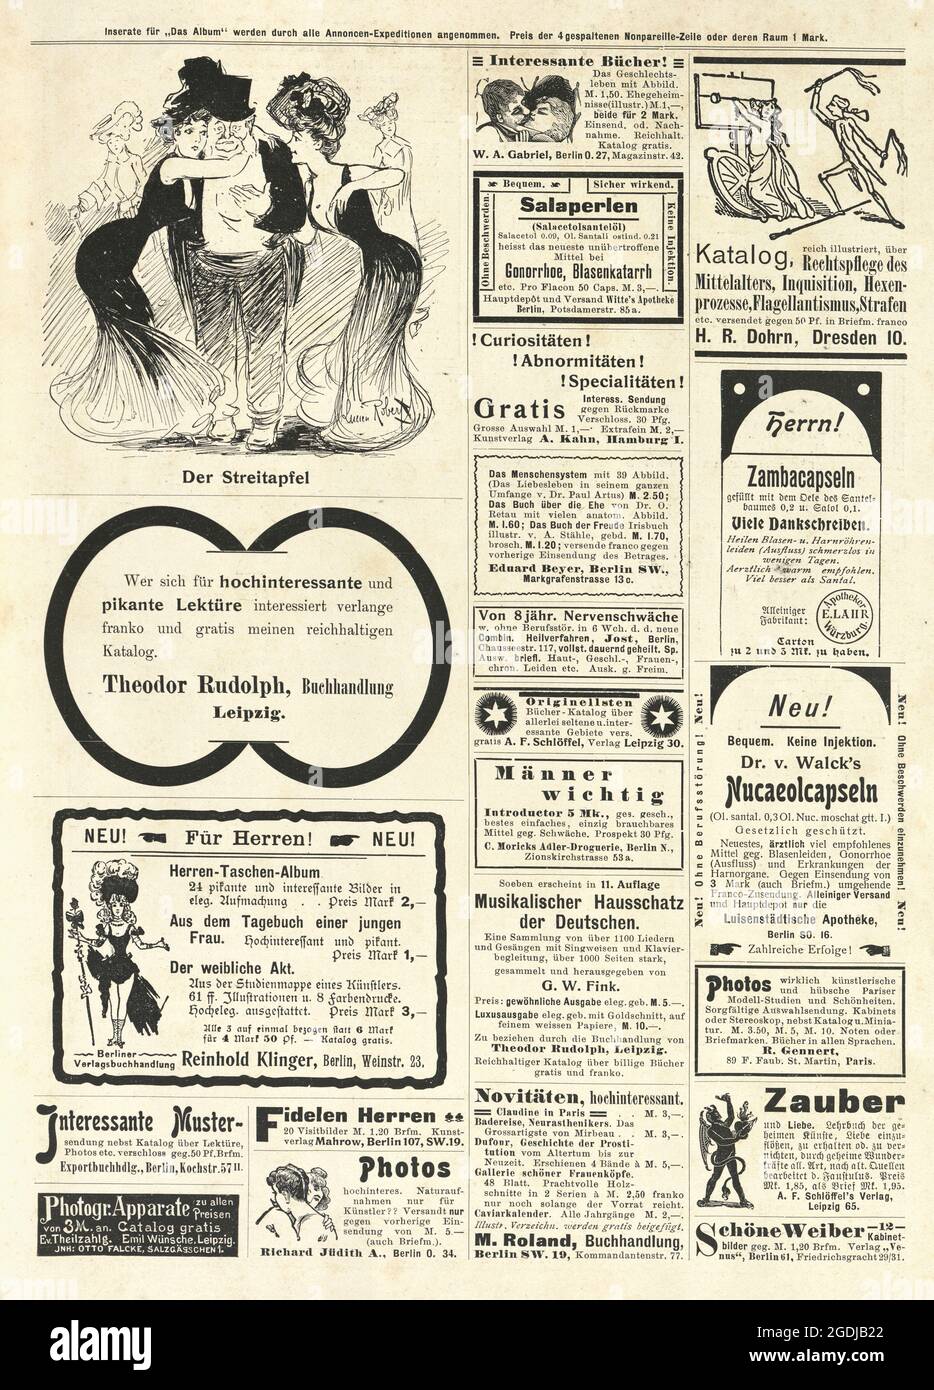 Anuncios de periódicos antiguos, alemán, 1900s, Foto de stock